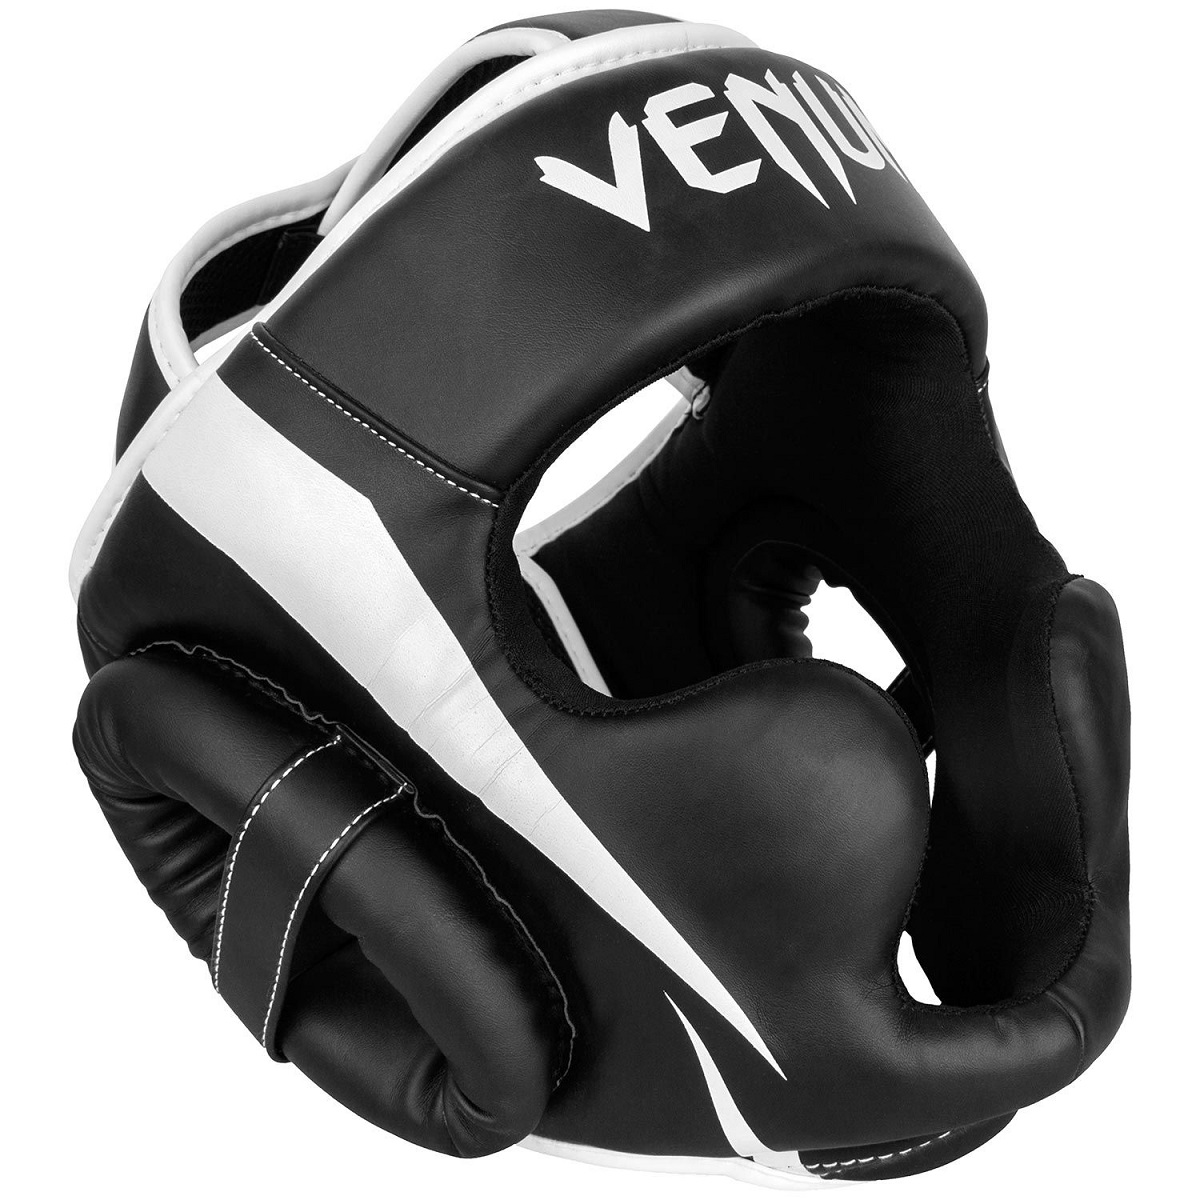 VENUM ヘッドガード ELITE HEADGEAR （ブラック×ホワイト） //ボクシング スパーリング キックボクシング ヘッドギア 格闘技  防具 送料無料｜武道格闘技ショップM-WORLD